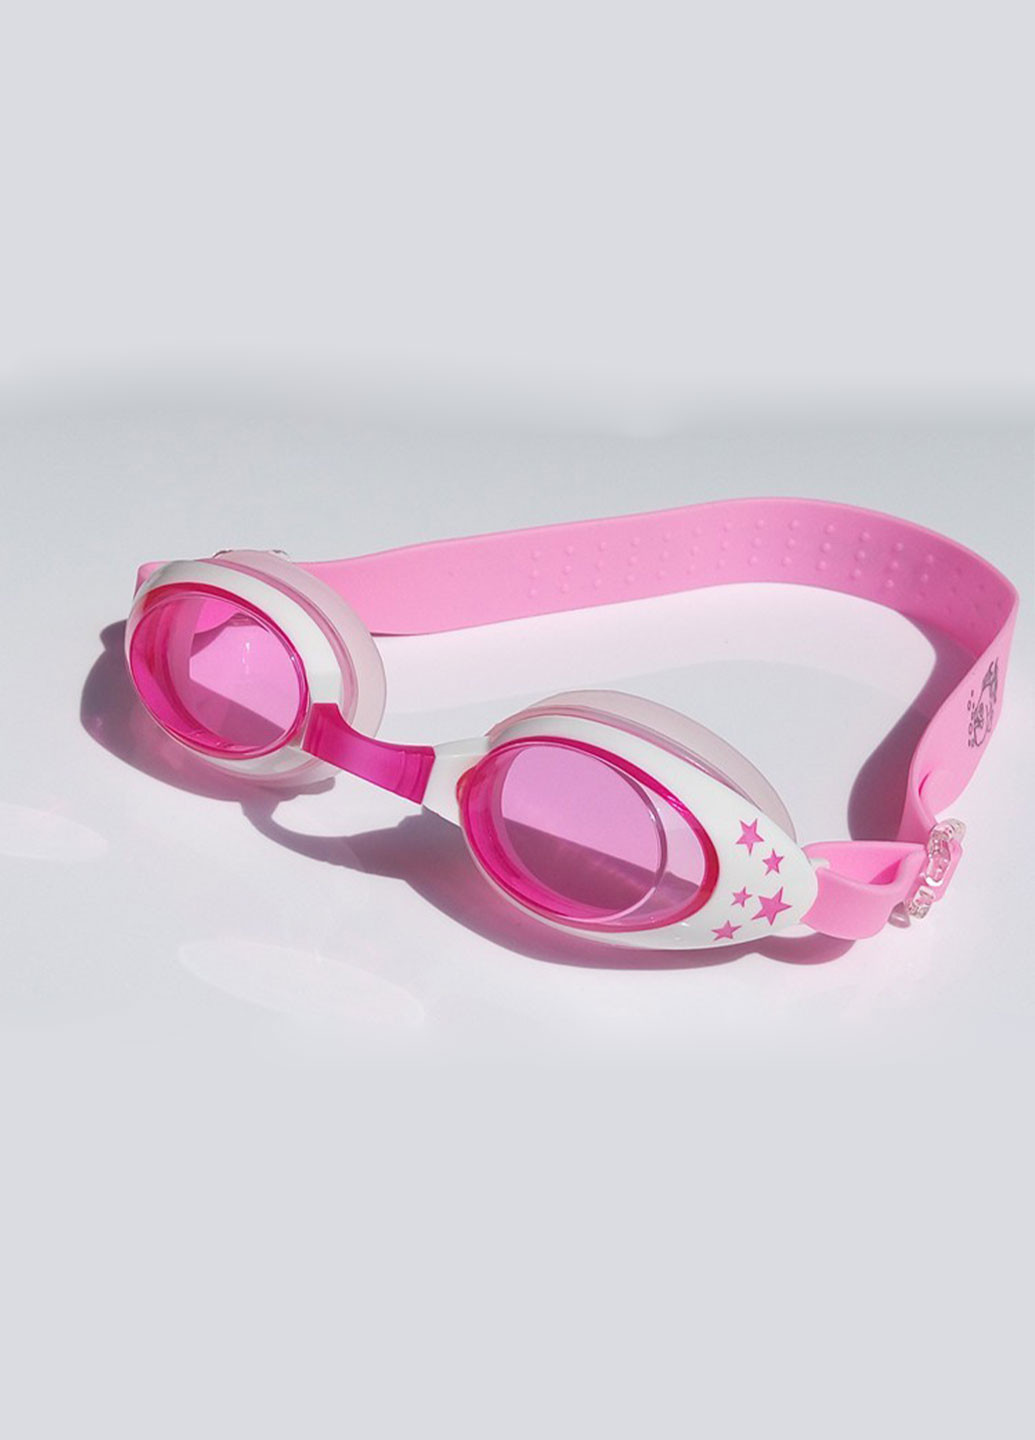 Очки для плавания детские, универсальные с Anti-туманным покрытием, Leacco No Brand (260946869)